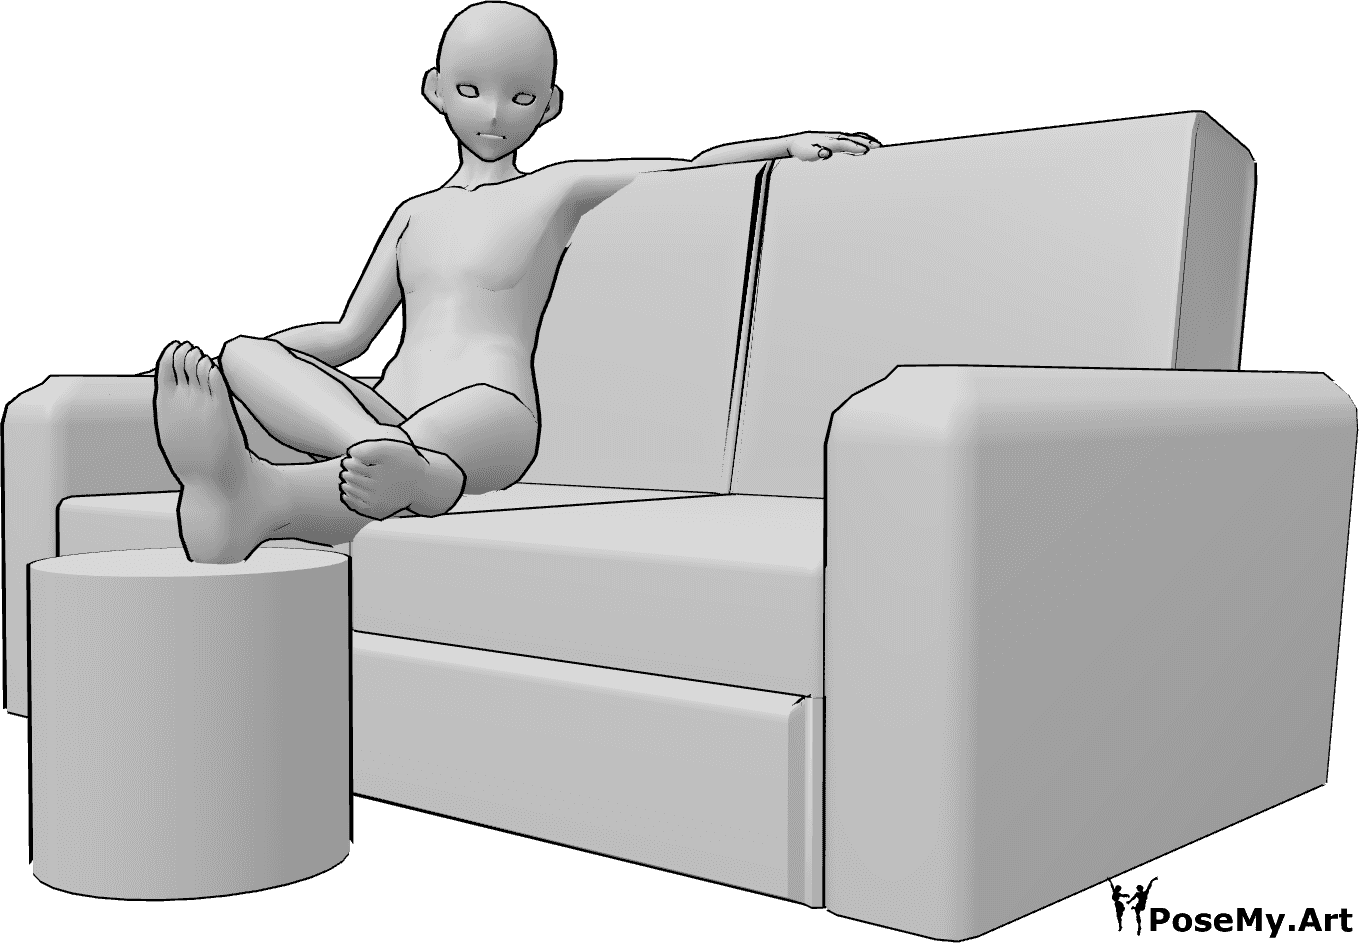 Référence des poses- Anime male feet pose - Un homme animé est assis sur le canapé et repose ses jambes, pose des pieds d'un homme animé.